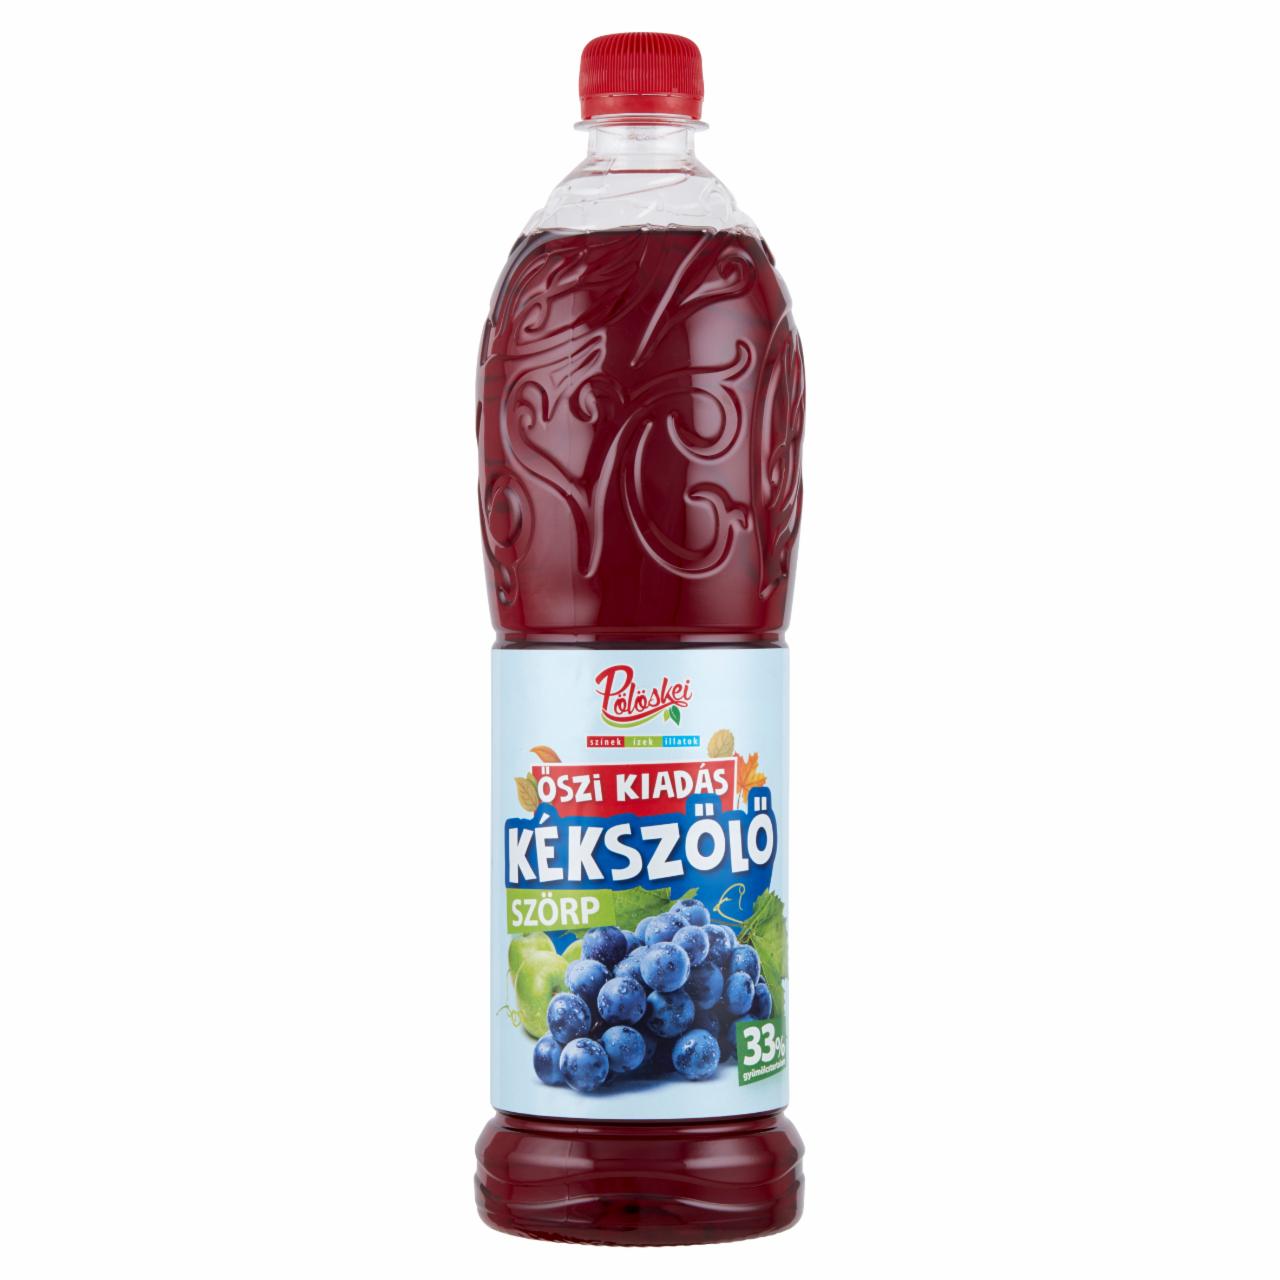 Képek - Pölöskei kékszőlő ízű vegyes gyümölcsszörp cukorral és édesítőszerrel 1 l